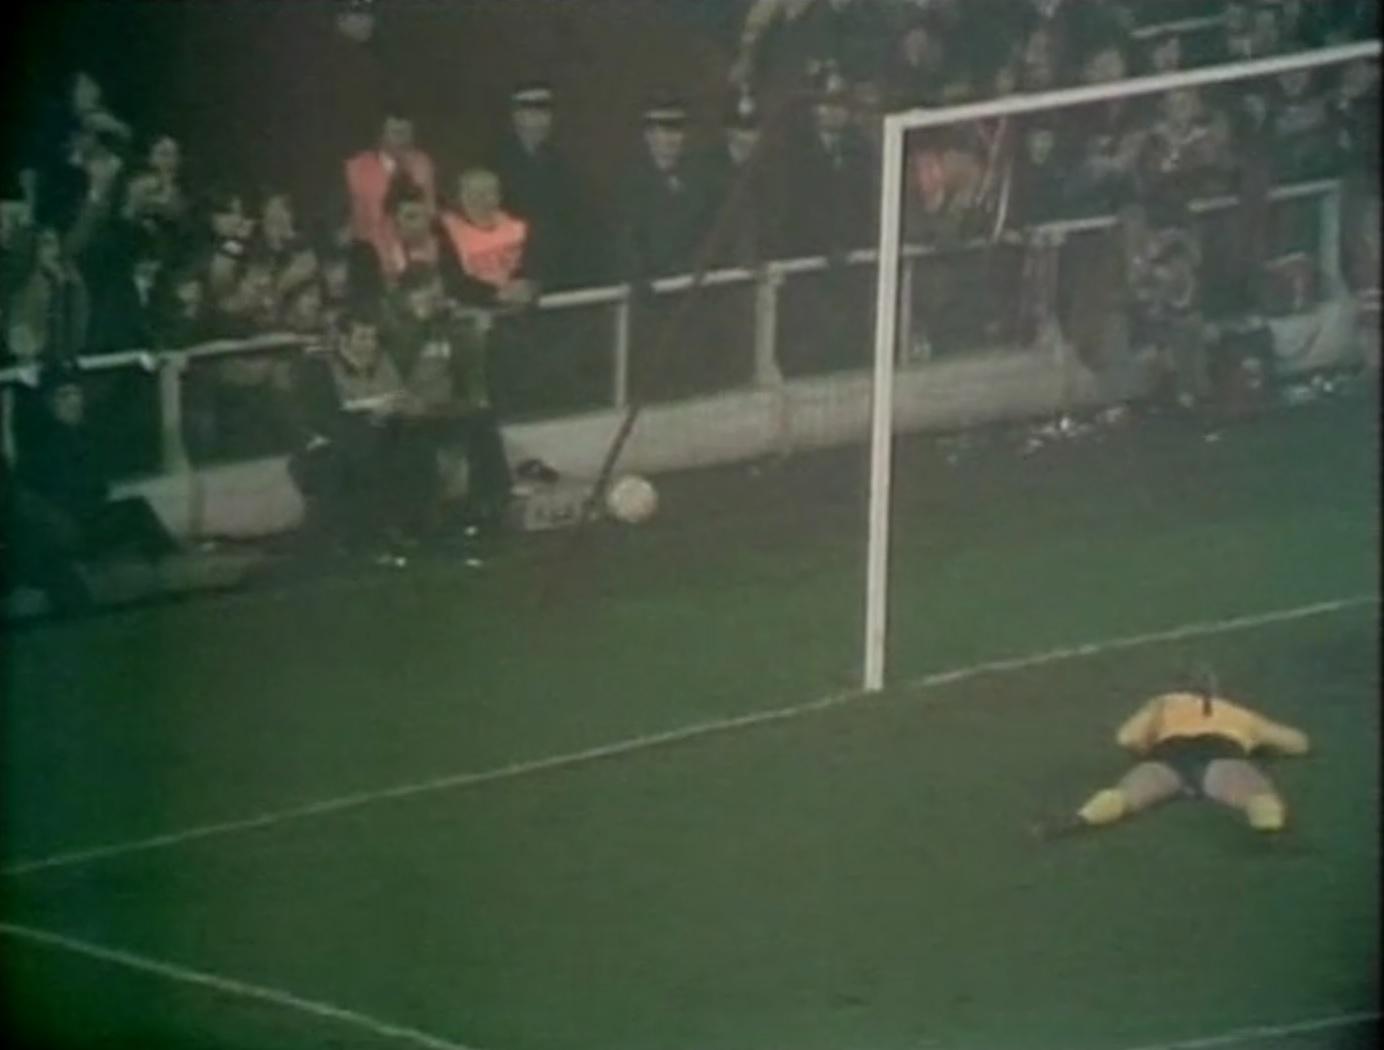 Piłka w bramce Śląska. Drugi gol Jimmy'ego Case'a w meczu Liverpool - Śląsk w Pucharze UEFA 1975/1976.